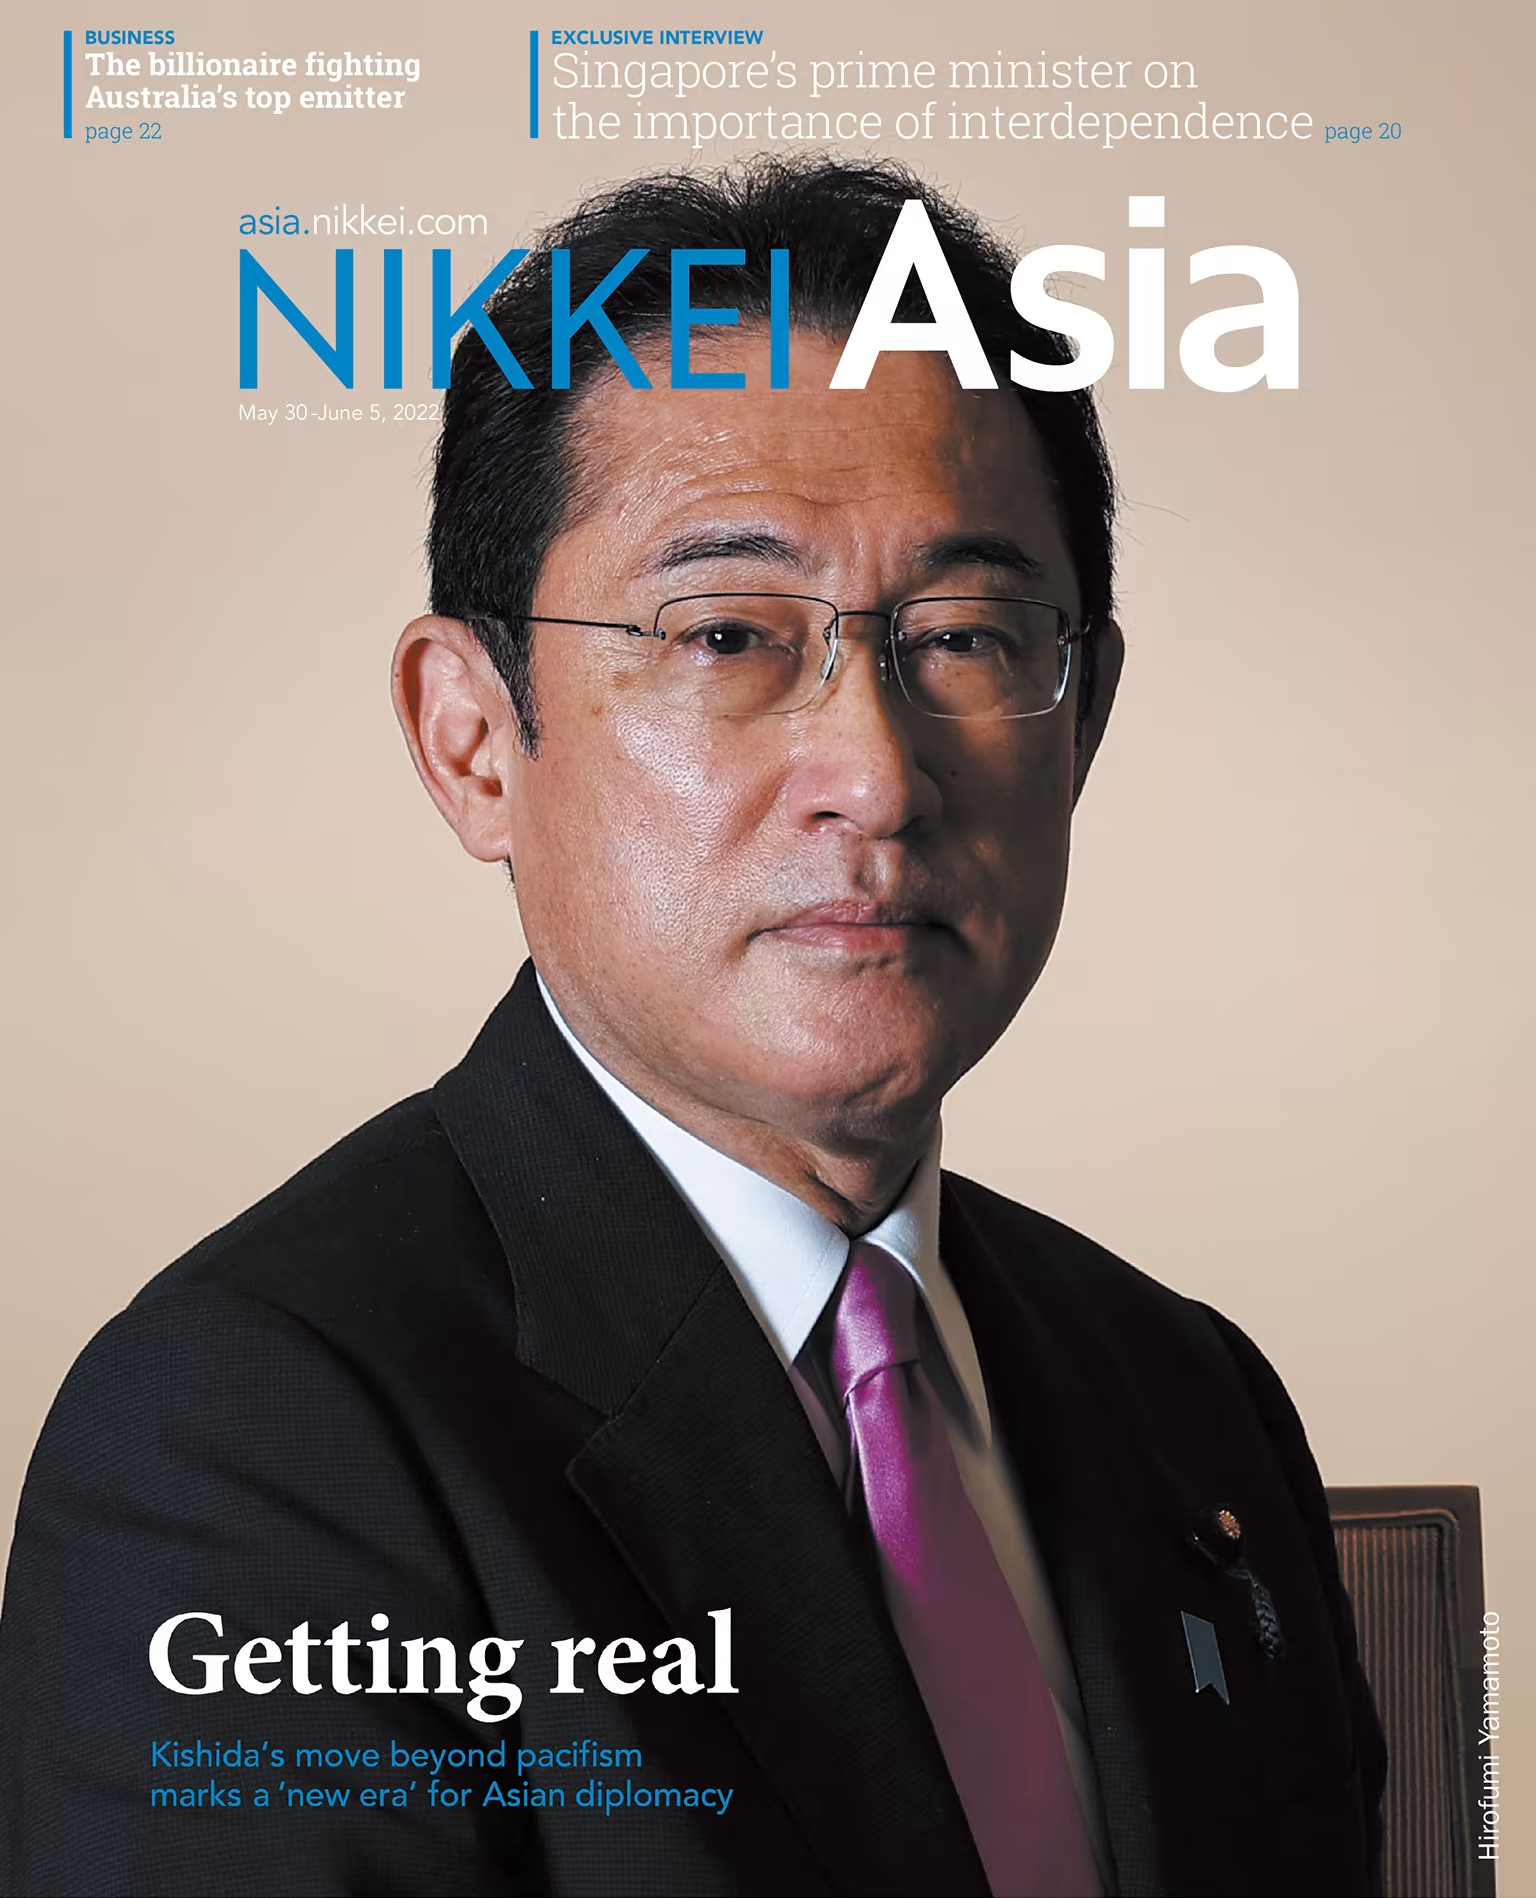 Nikkei Asian Review: Nikkei Asia - 2022: GETTING REAL - 22.22 tạp chí kinh tế nước ngoài, nhập khẩu từ Singapore